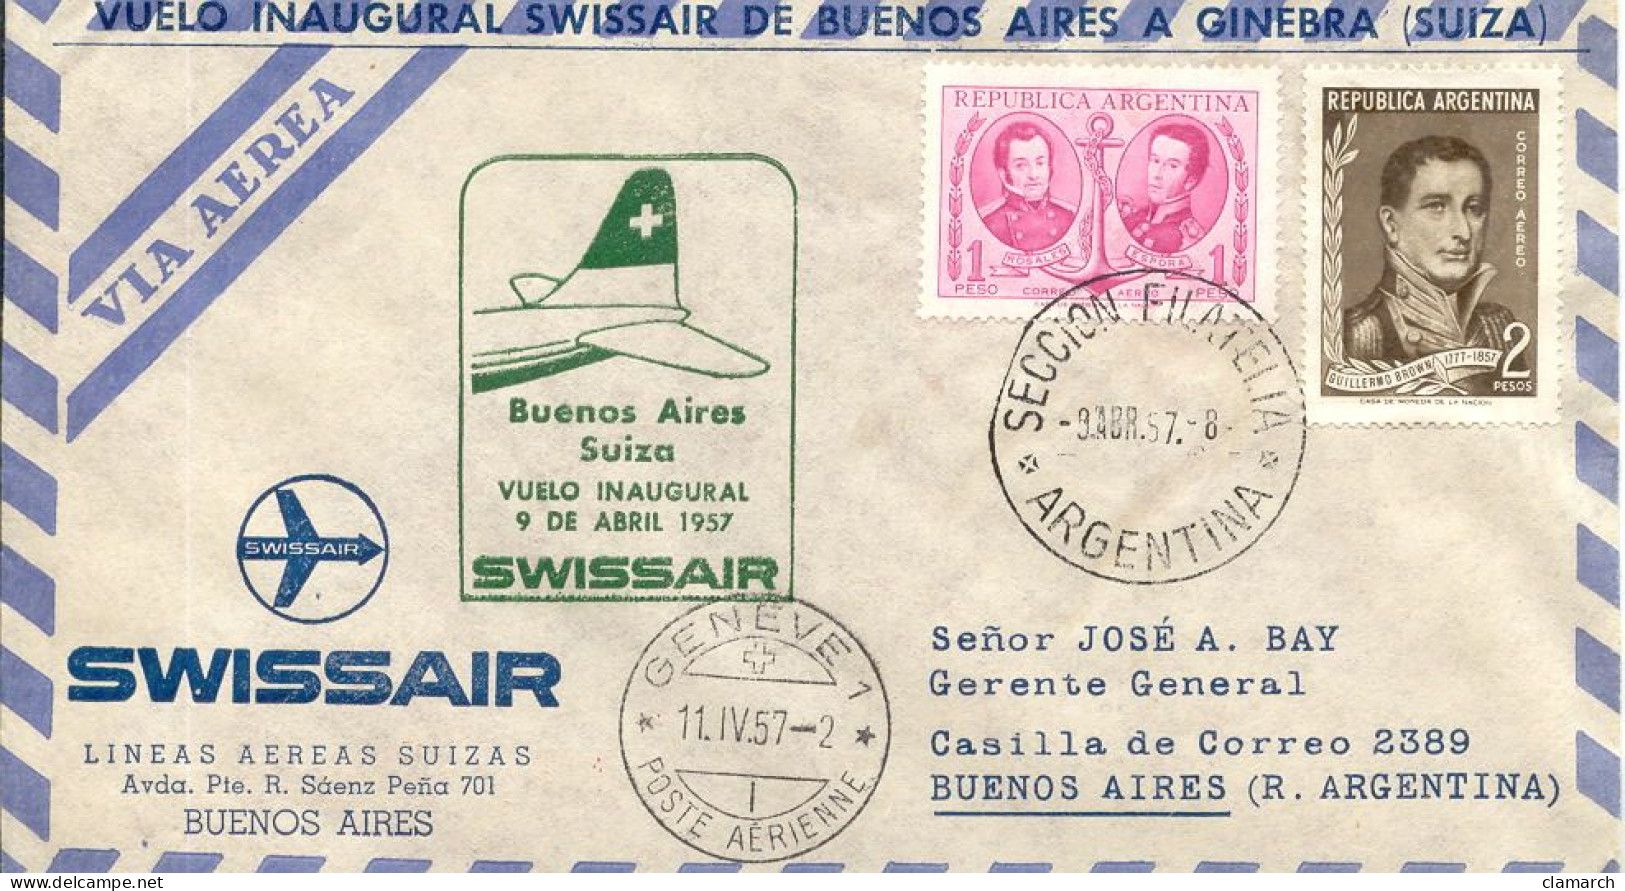 Aérophilatélie-Buenos Aires Suiza Vuelo Inaugural 9 De Abril1957 Par Swissair-cachet Seccion Filateli Du 9.4.57 - Erst- U. Sonderflugbriefe